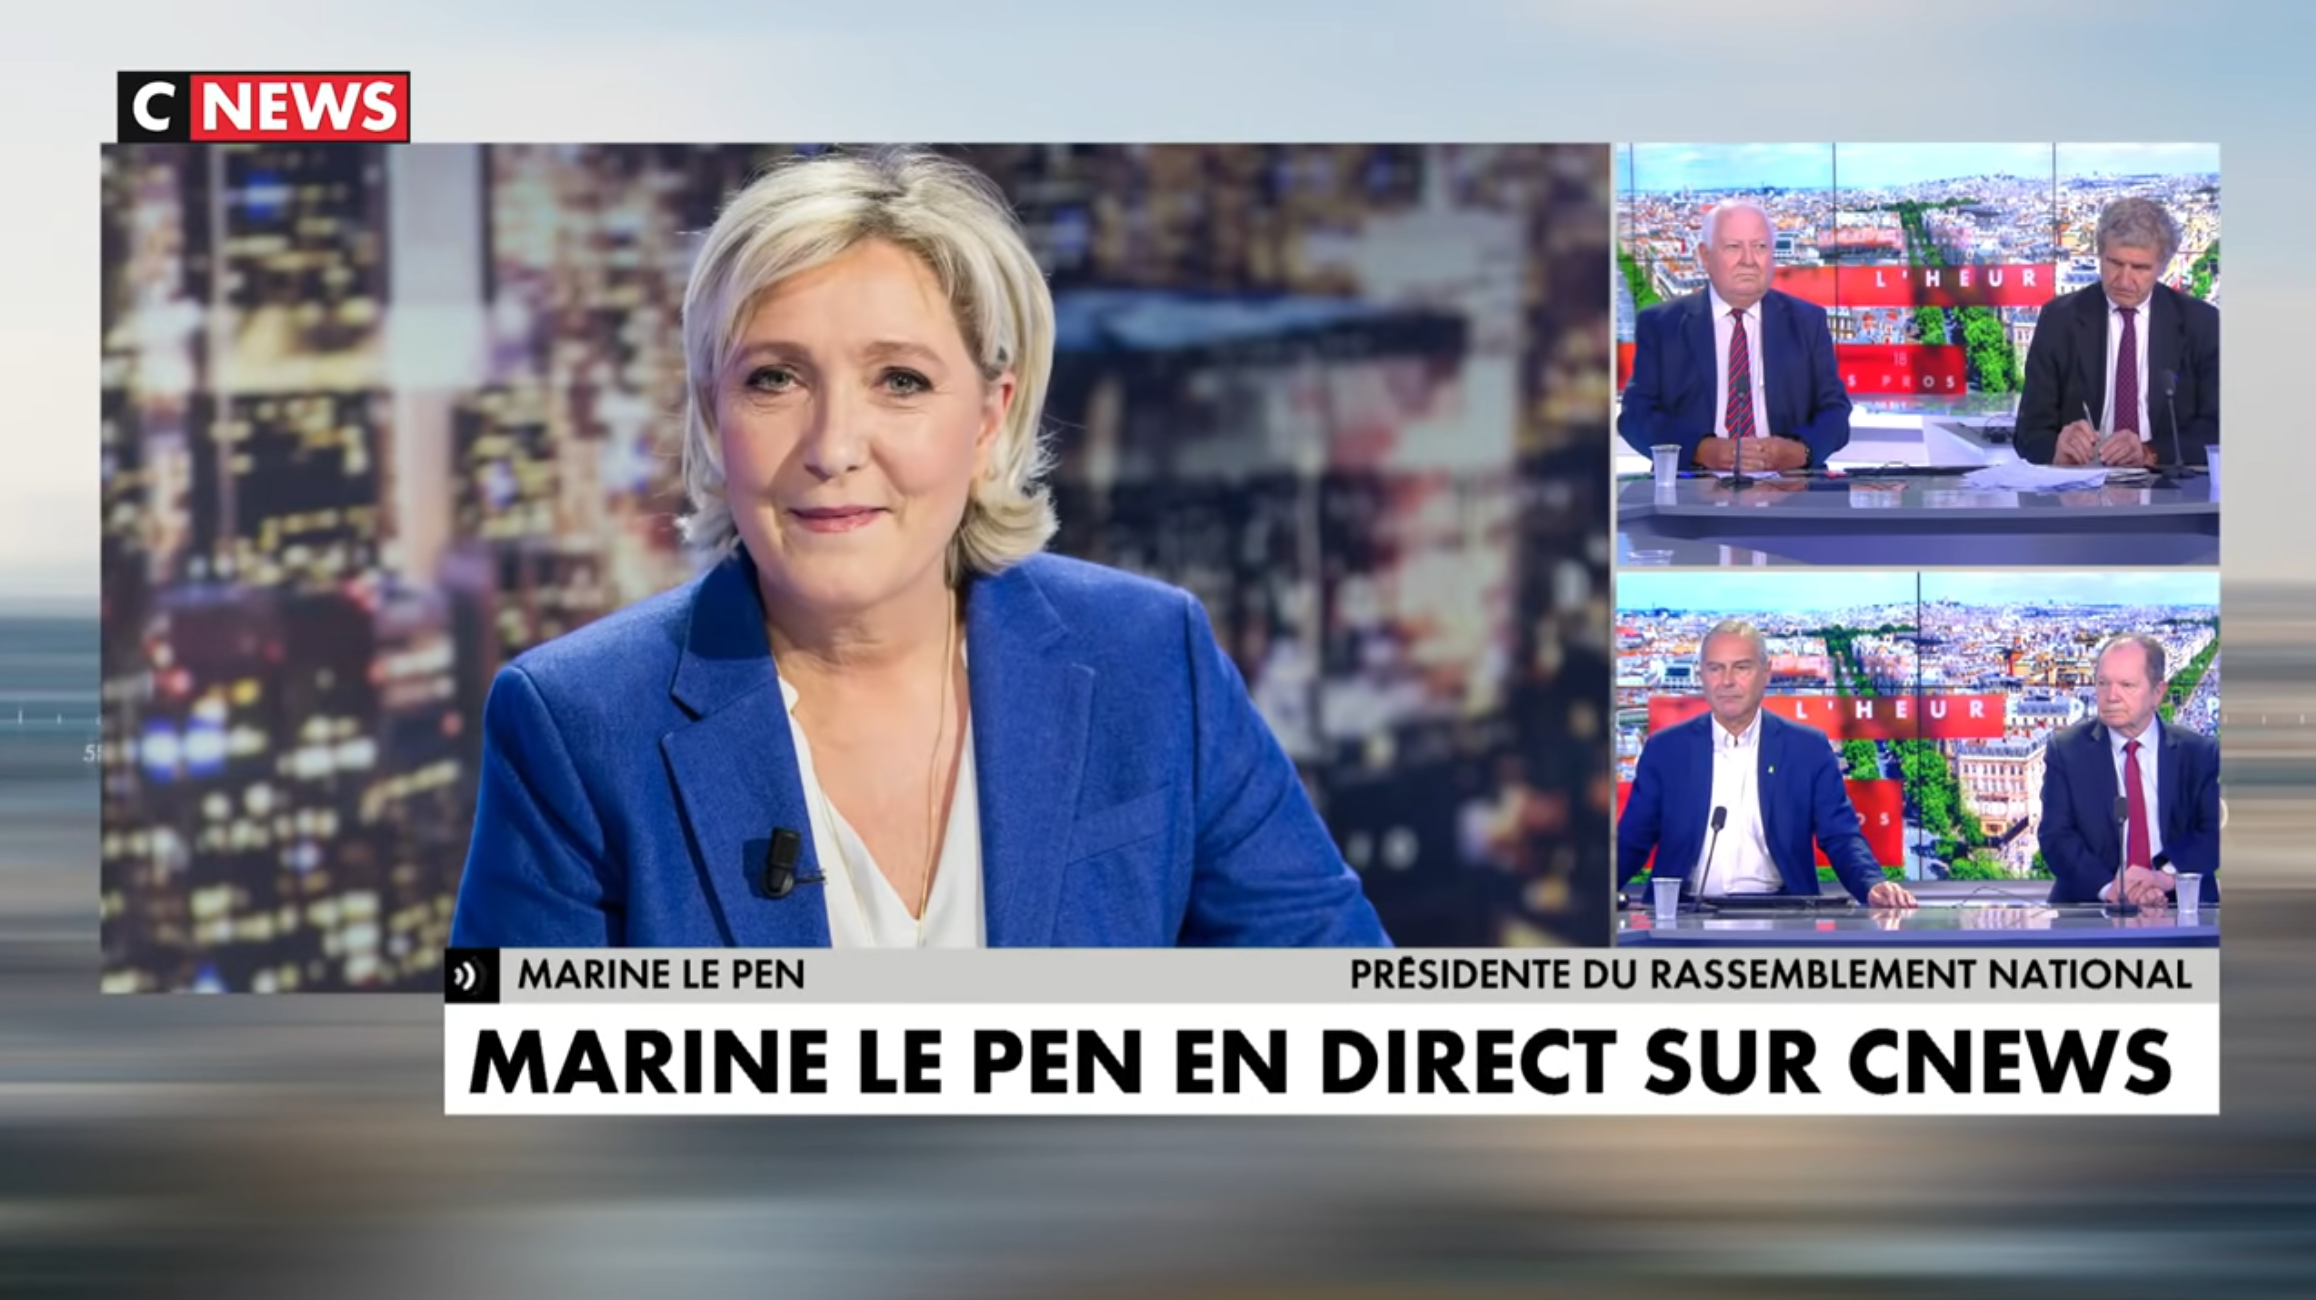 Le convoi de Marine Le Pen gravement attaqué à Dijon, elle témoigne chez Pascal Praud (AUDIO)